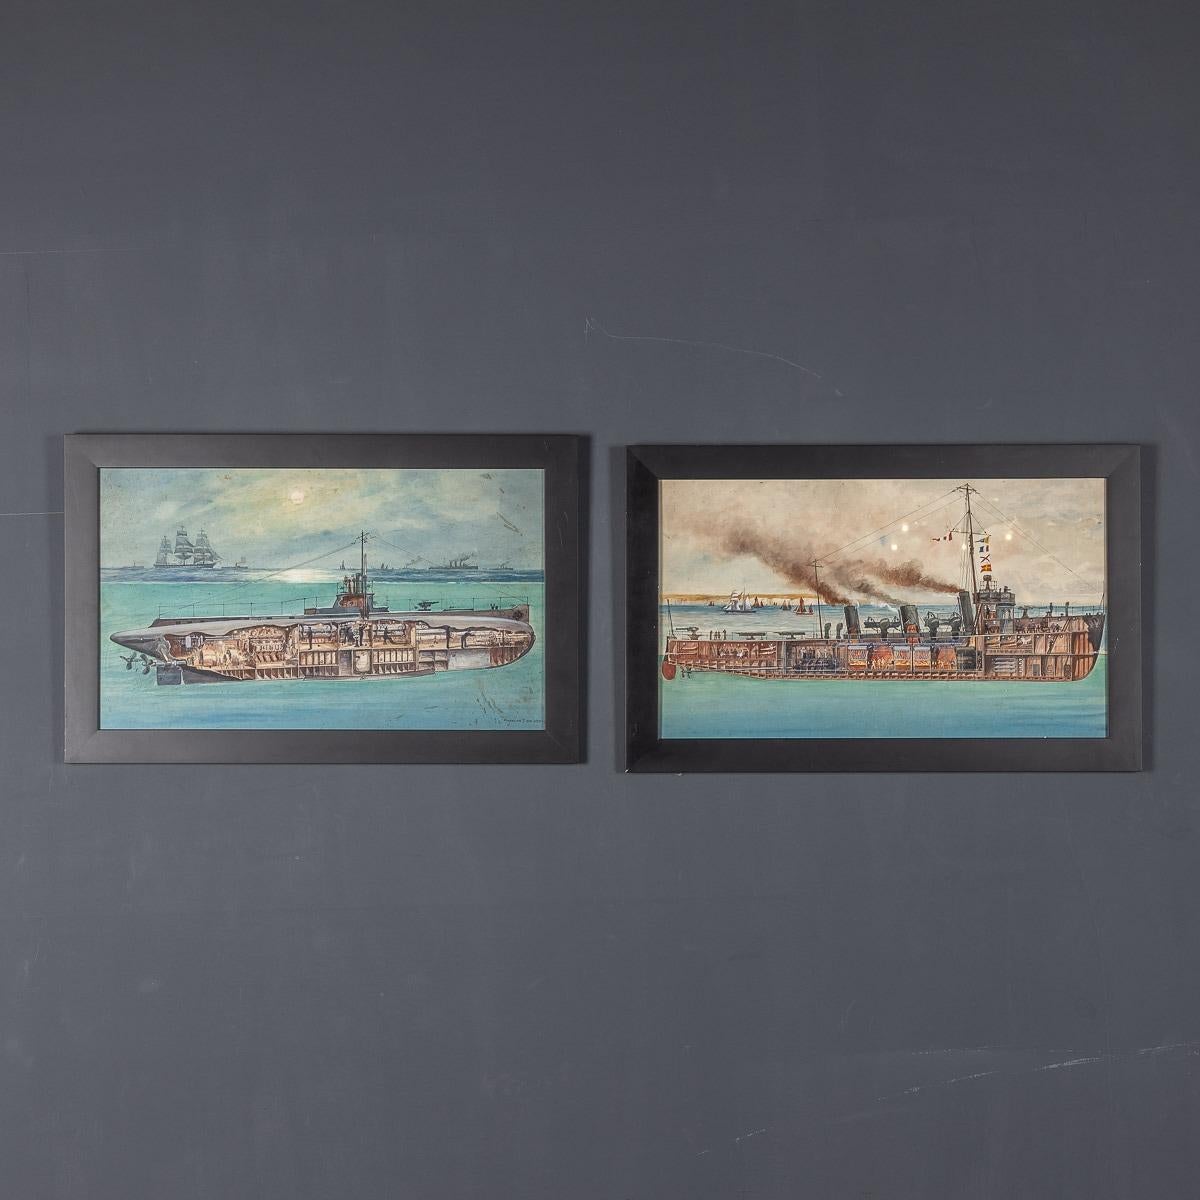 Zwei Original-Gauche-Gemälde von Charles John de Lacy, die das Innere von zwei verschiedenen Kriegsschiffen illustrieren. Diese detaillierten technischen Zeichnungen im Schnitt wurden in Lehrbücher kopiert. Sie zeigen nicht nur die detaillierte